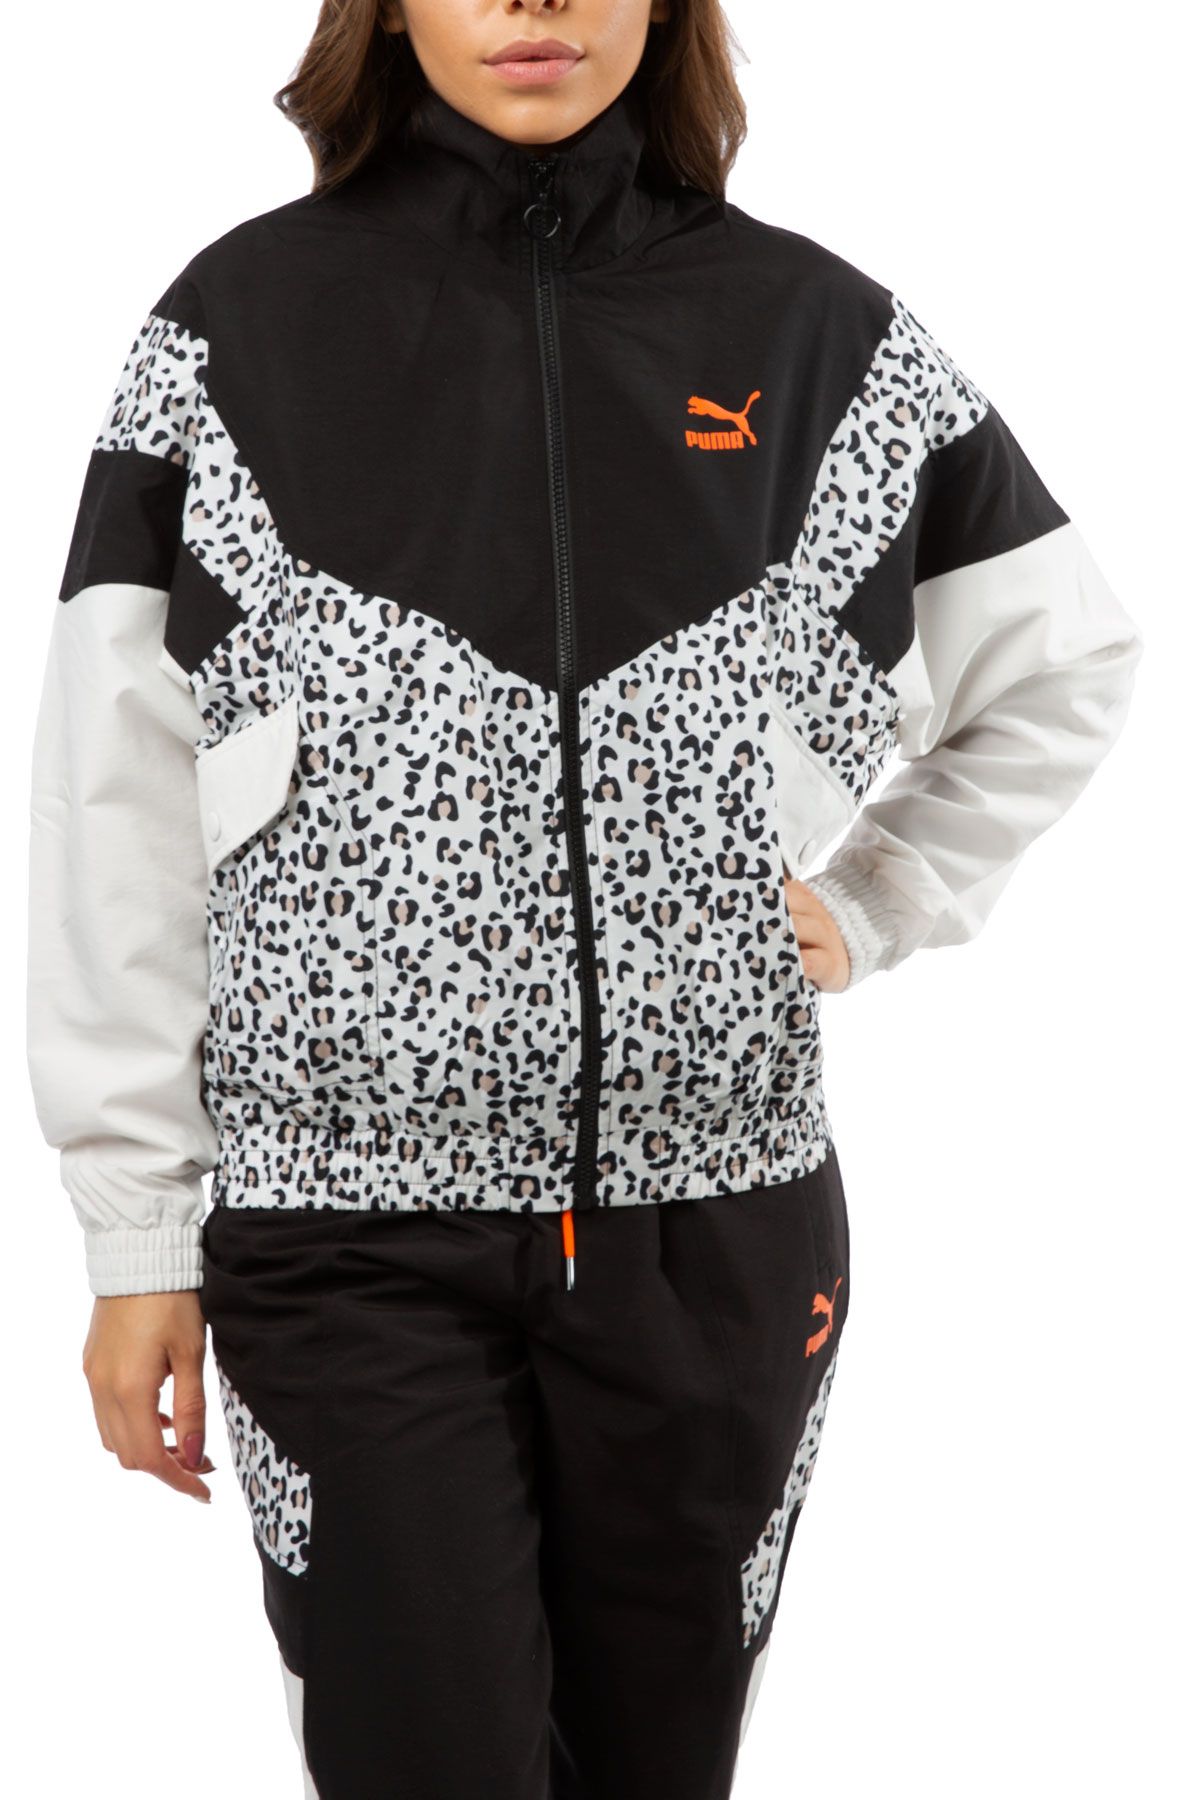 puma leopard jacket